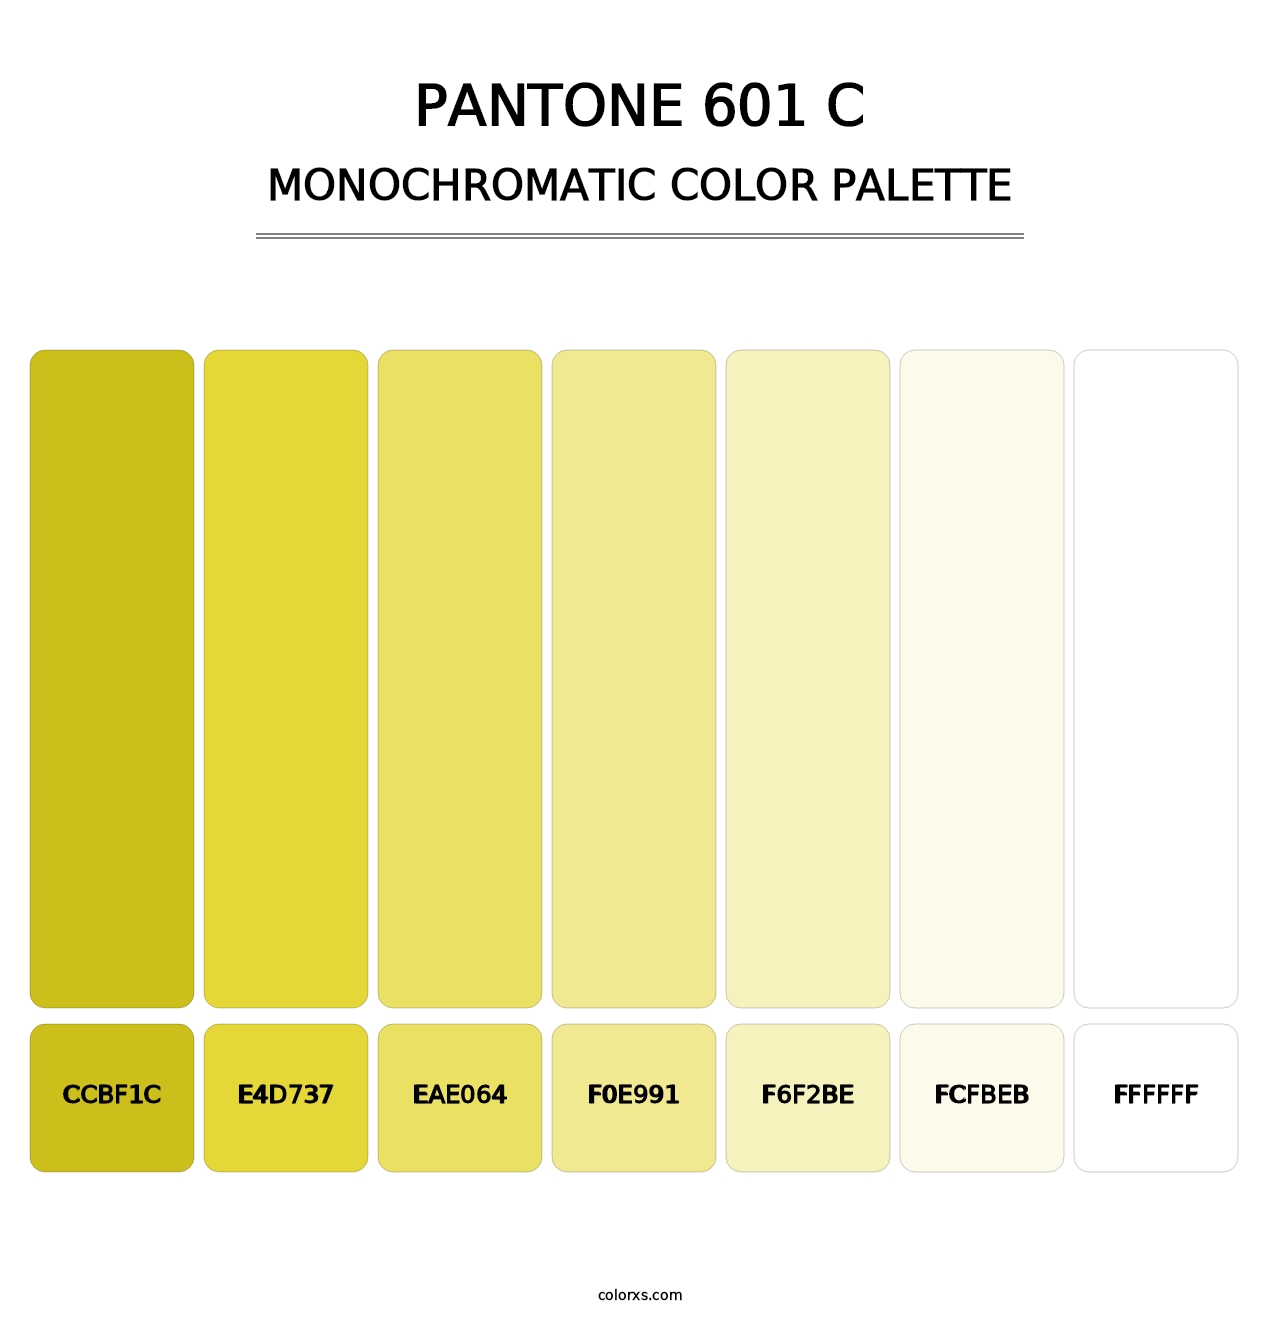 PANTONE 601 C - Monochromatic Color Palette